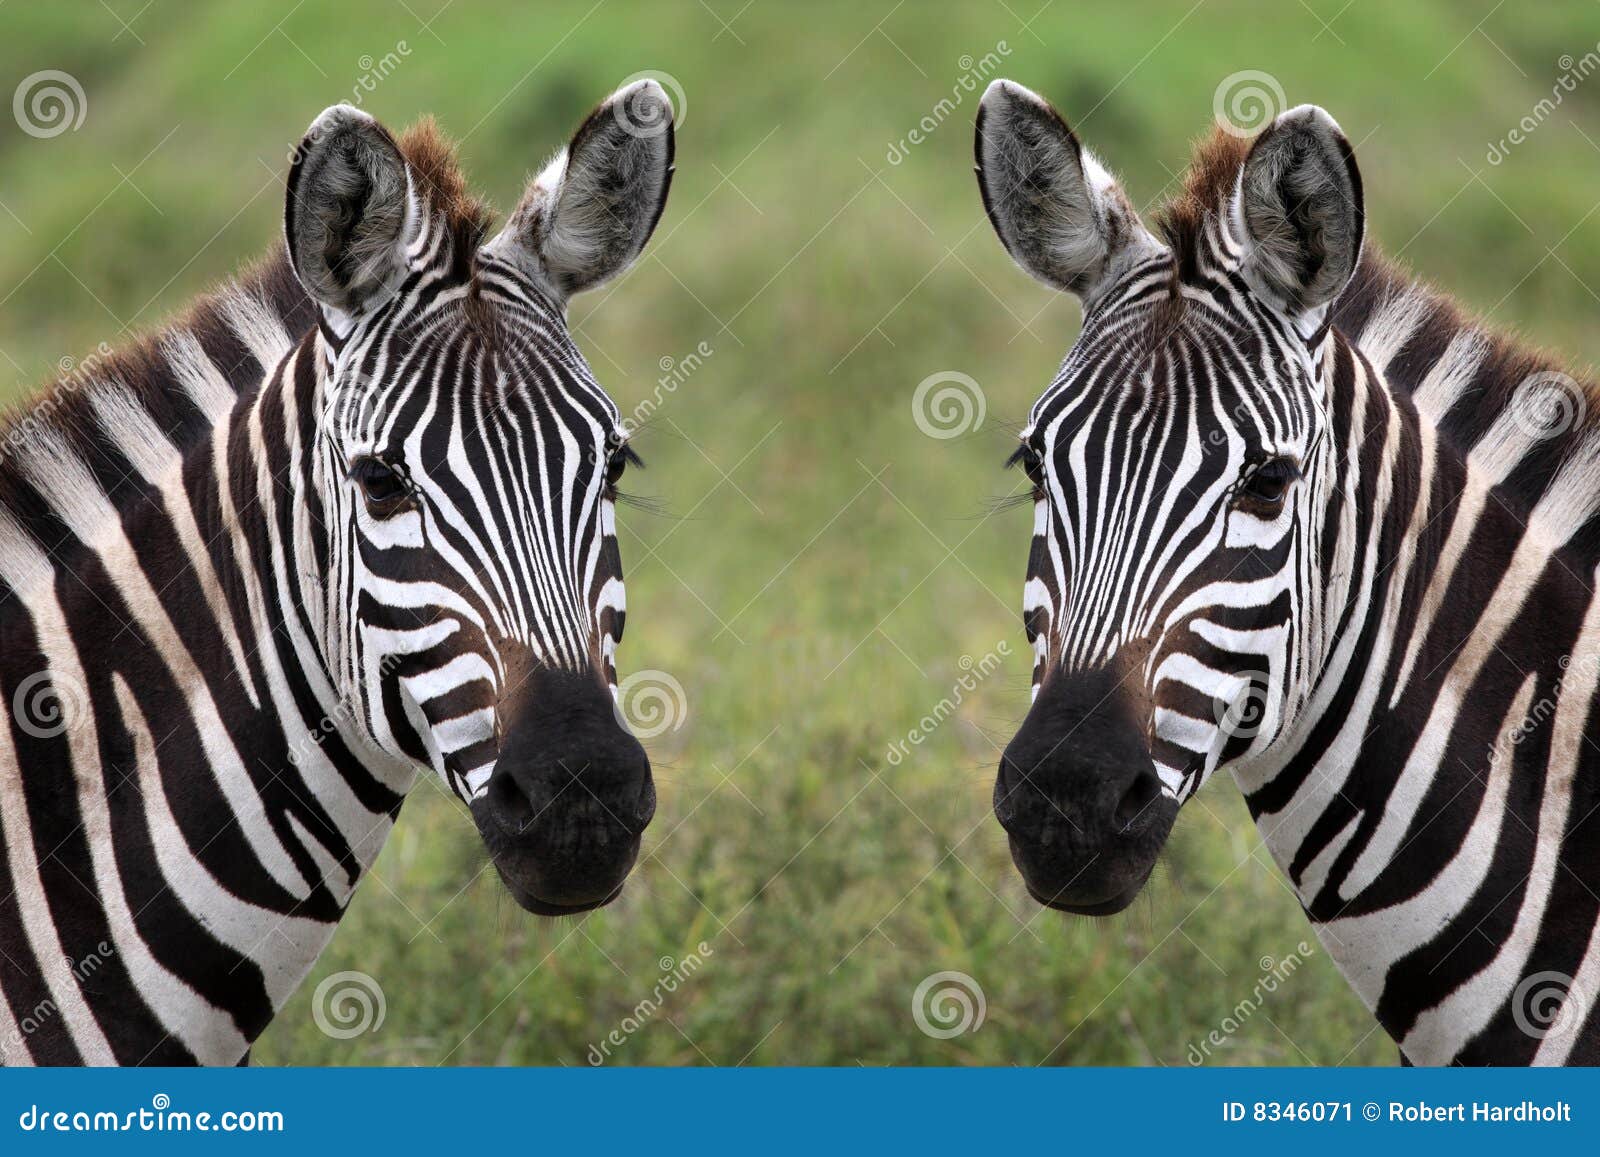 zebra duo